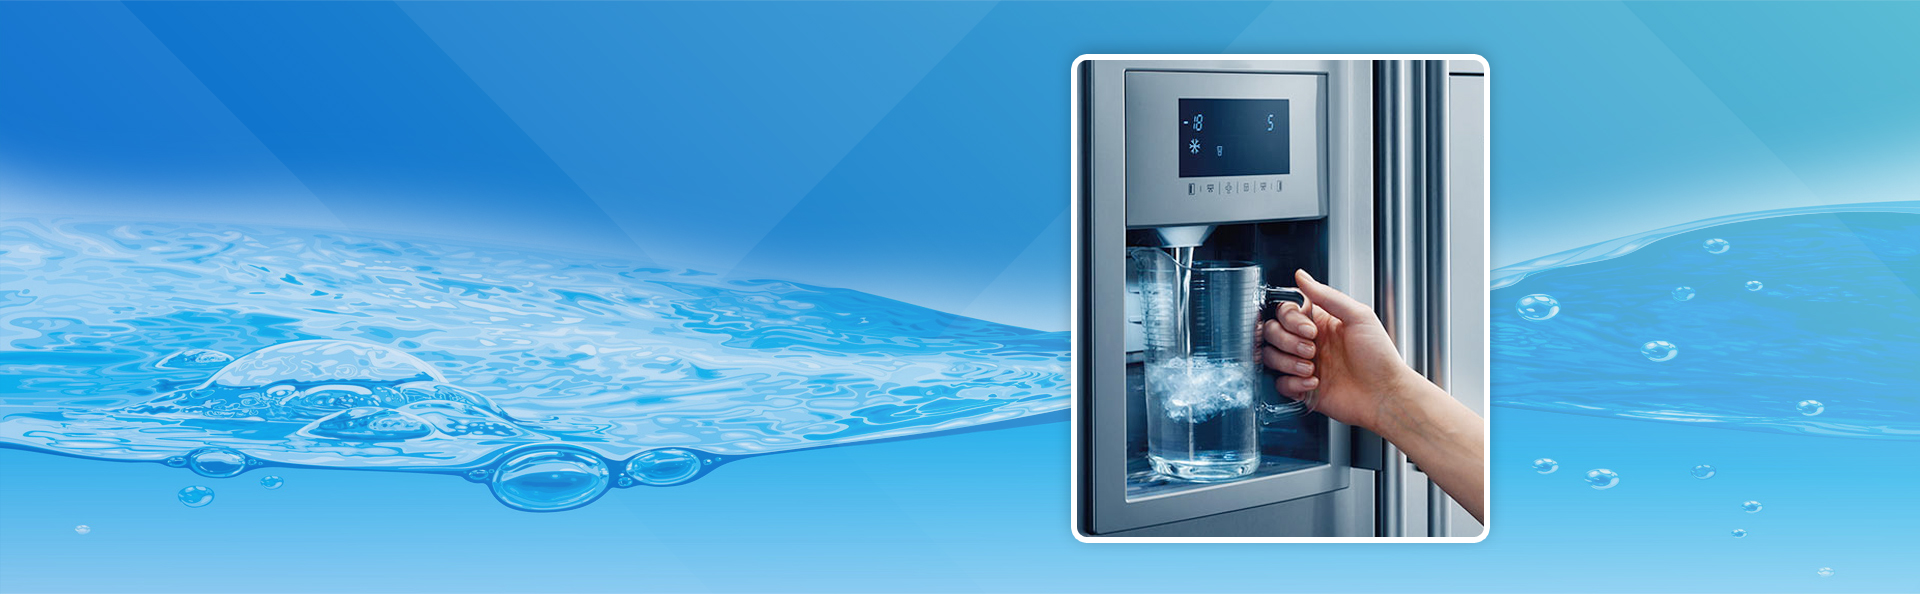 Холодная вода в холодильнике. Диспенсер воды для холодильника nrs9181vxb. Водяной холодильник. Холодильник со льдом и водой. Холодильник с водичкой.